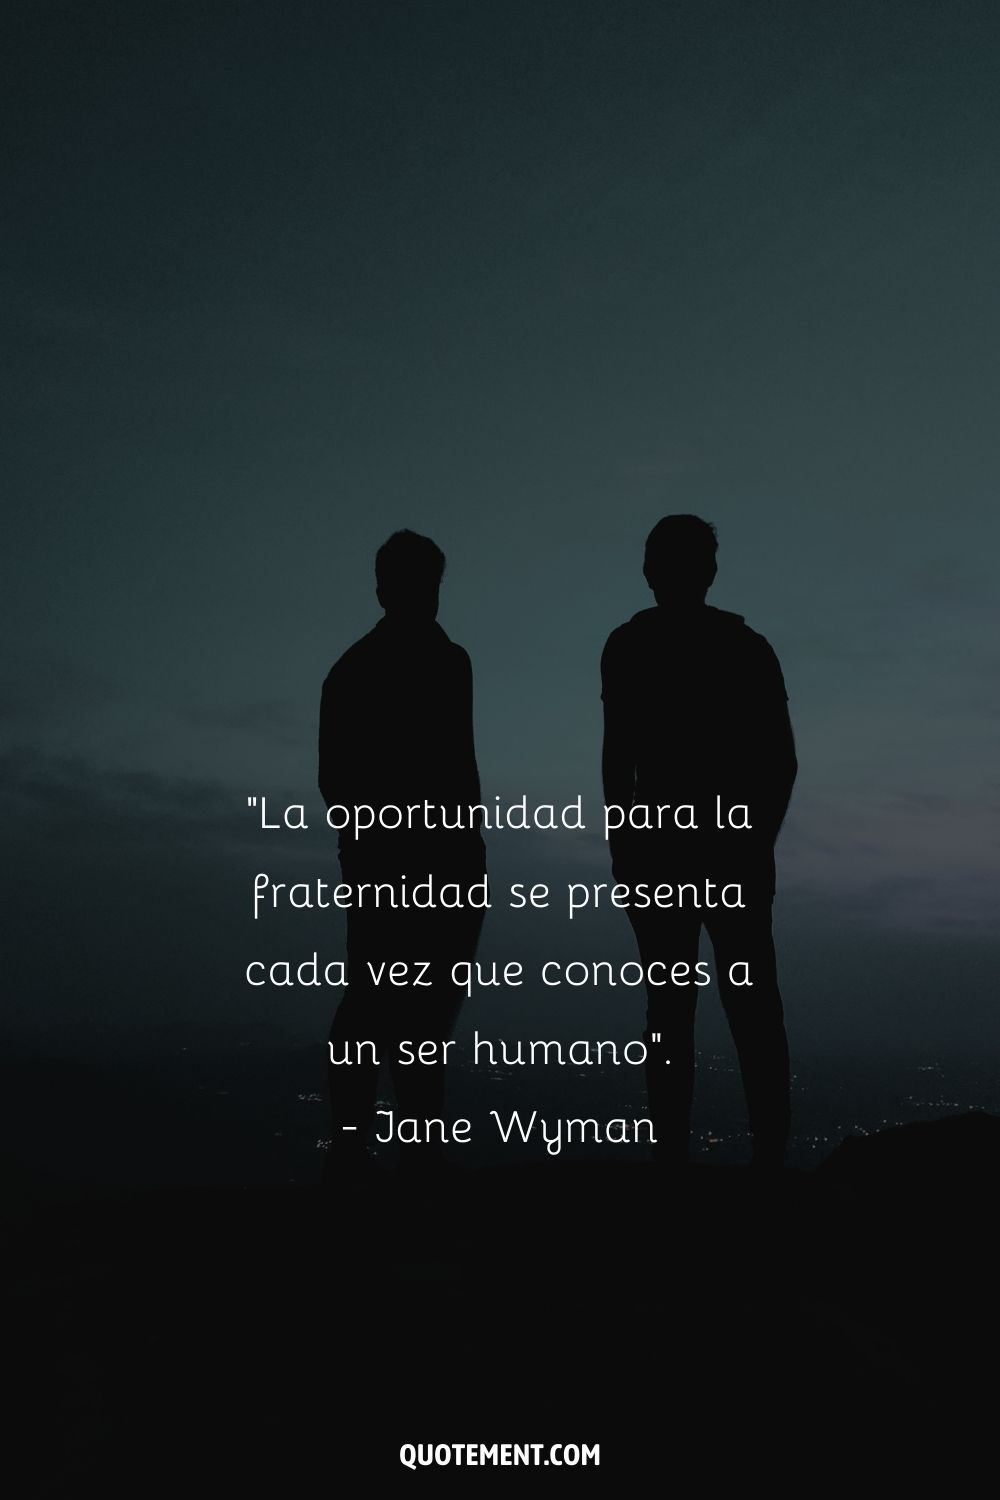 "La oportunidad para la fraternidad se presenta cada vez que conoces a un ser humano". - Jane Wyman